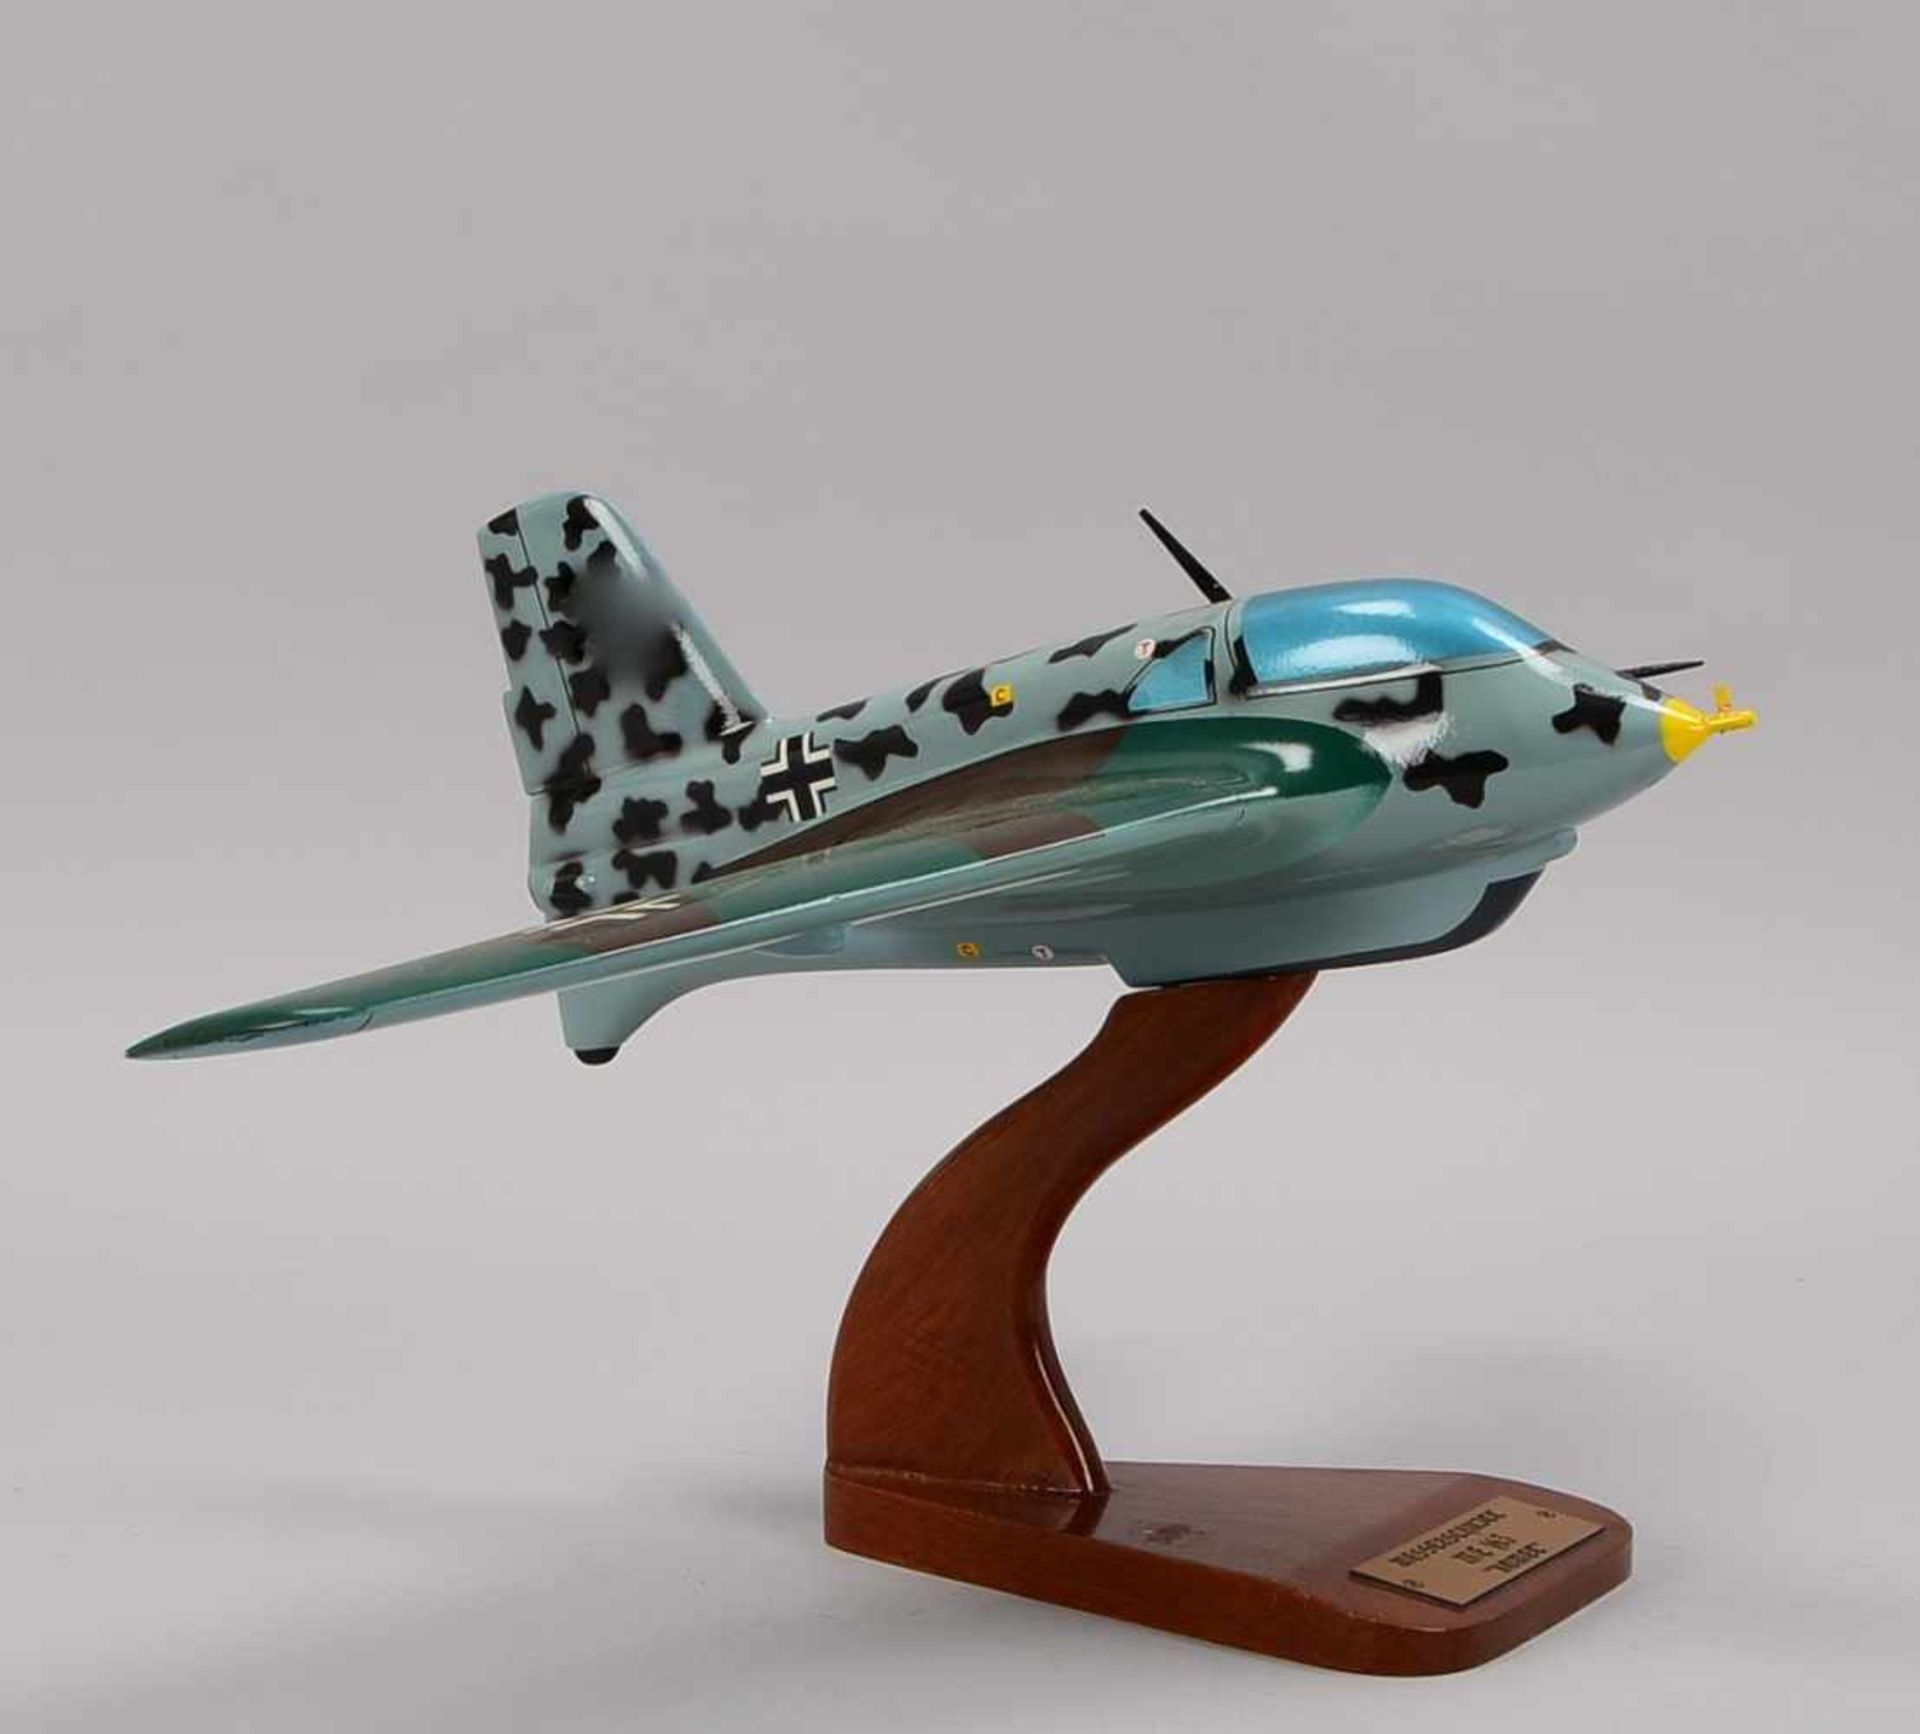 Flugzeugmodell, 'Messerschmitt ME 163', 'Komet' (Modell des ersten Flugzeugs, mit dem die 1.000 km-